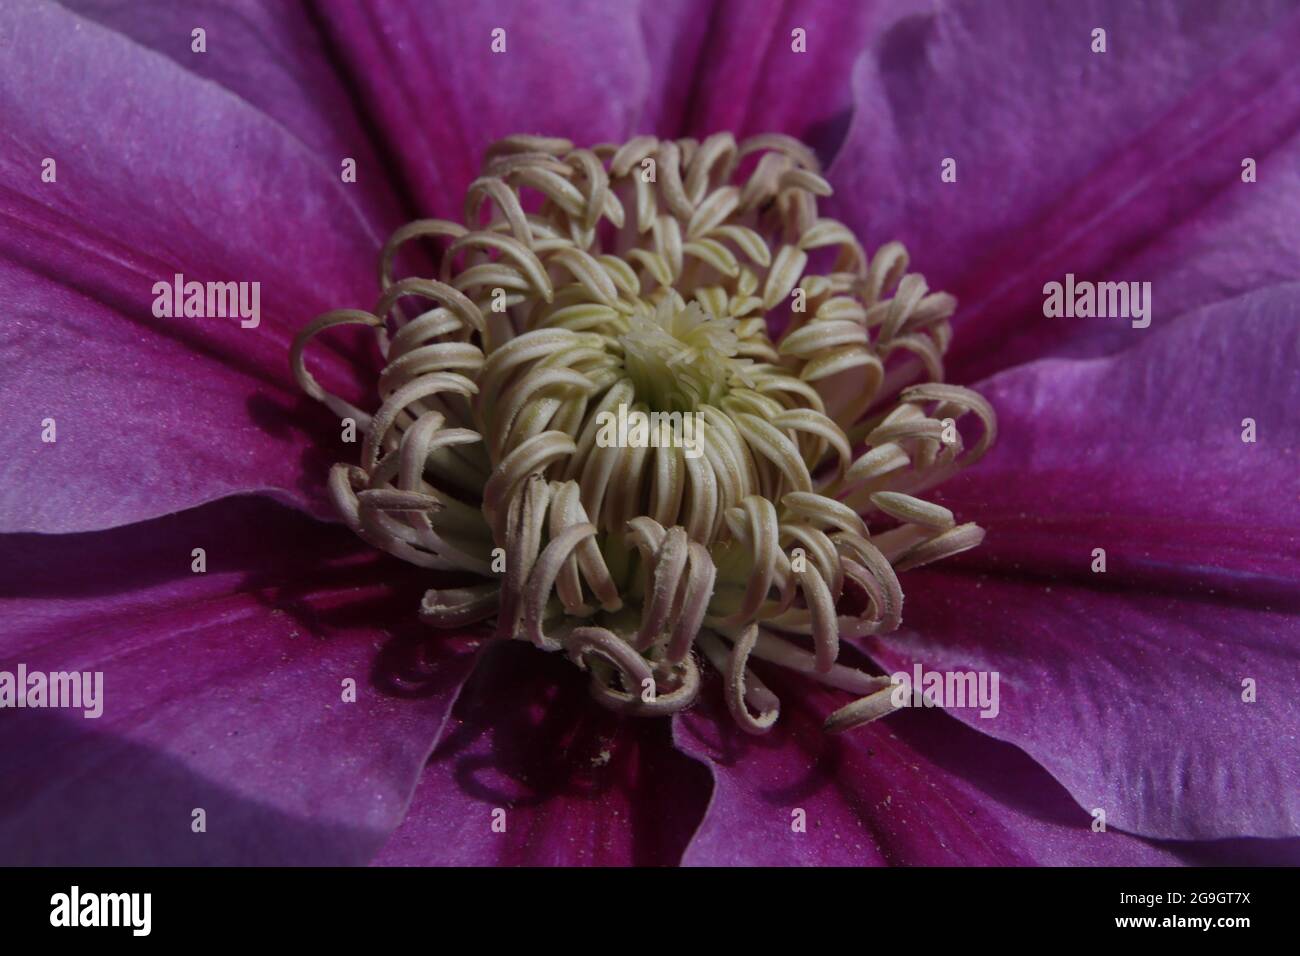 Die Makro-Aufnahme zeigt beeindruckende details der Clematis-Blüte (Klematis, Waldrebe) Foto de stock